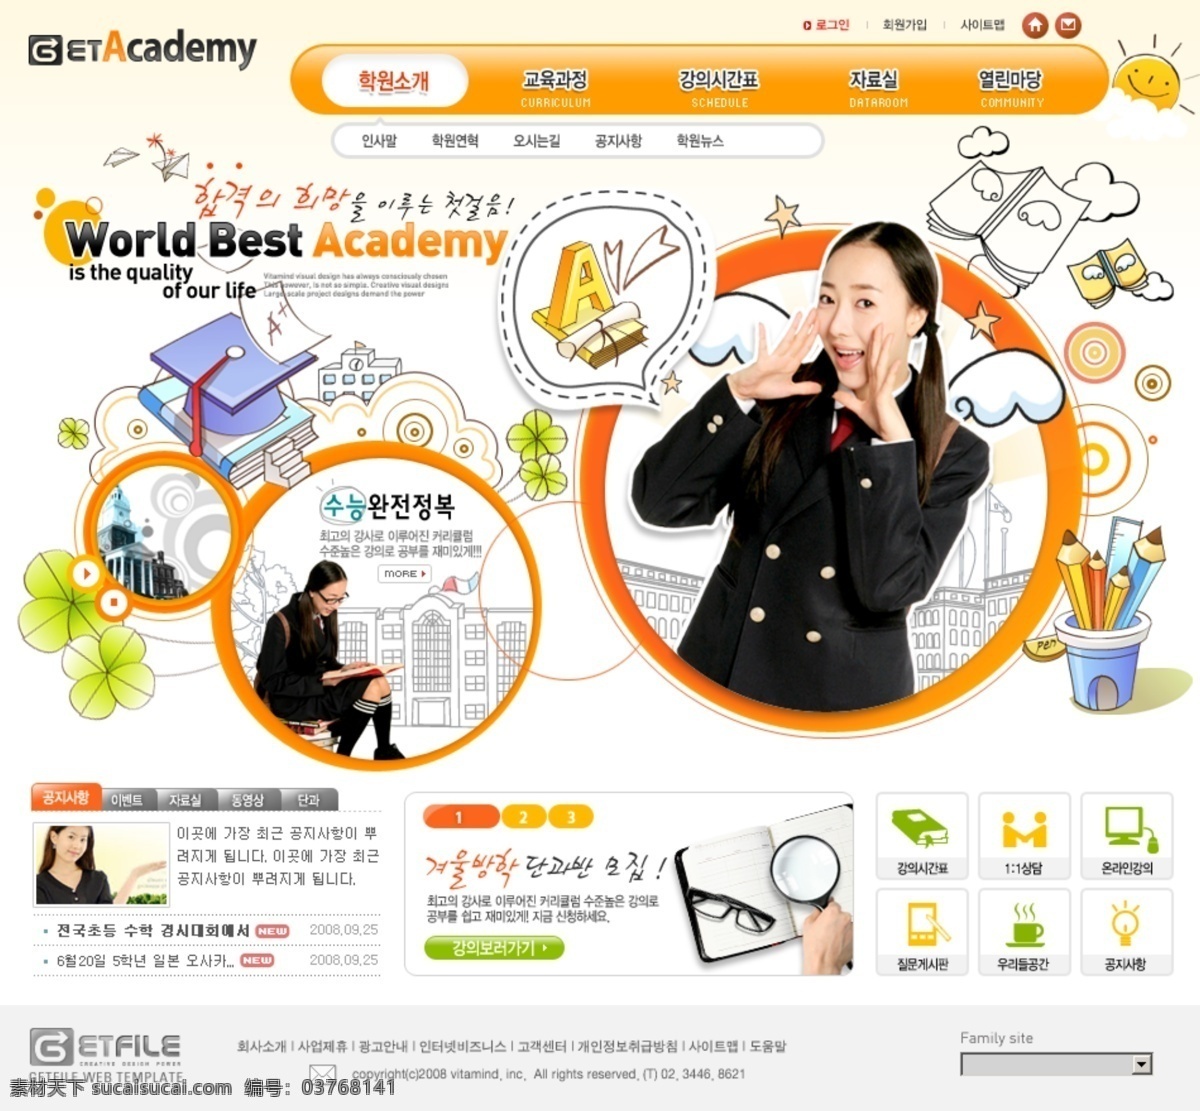 橙黄色 教育 学习 乐园 网页模板 韩国风格 橙黄色色调 学习乐园 网页素材